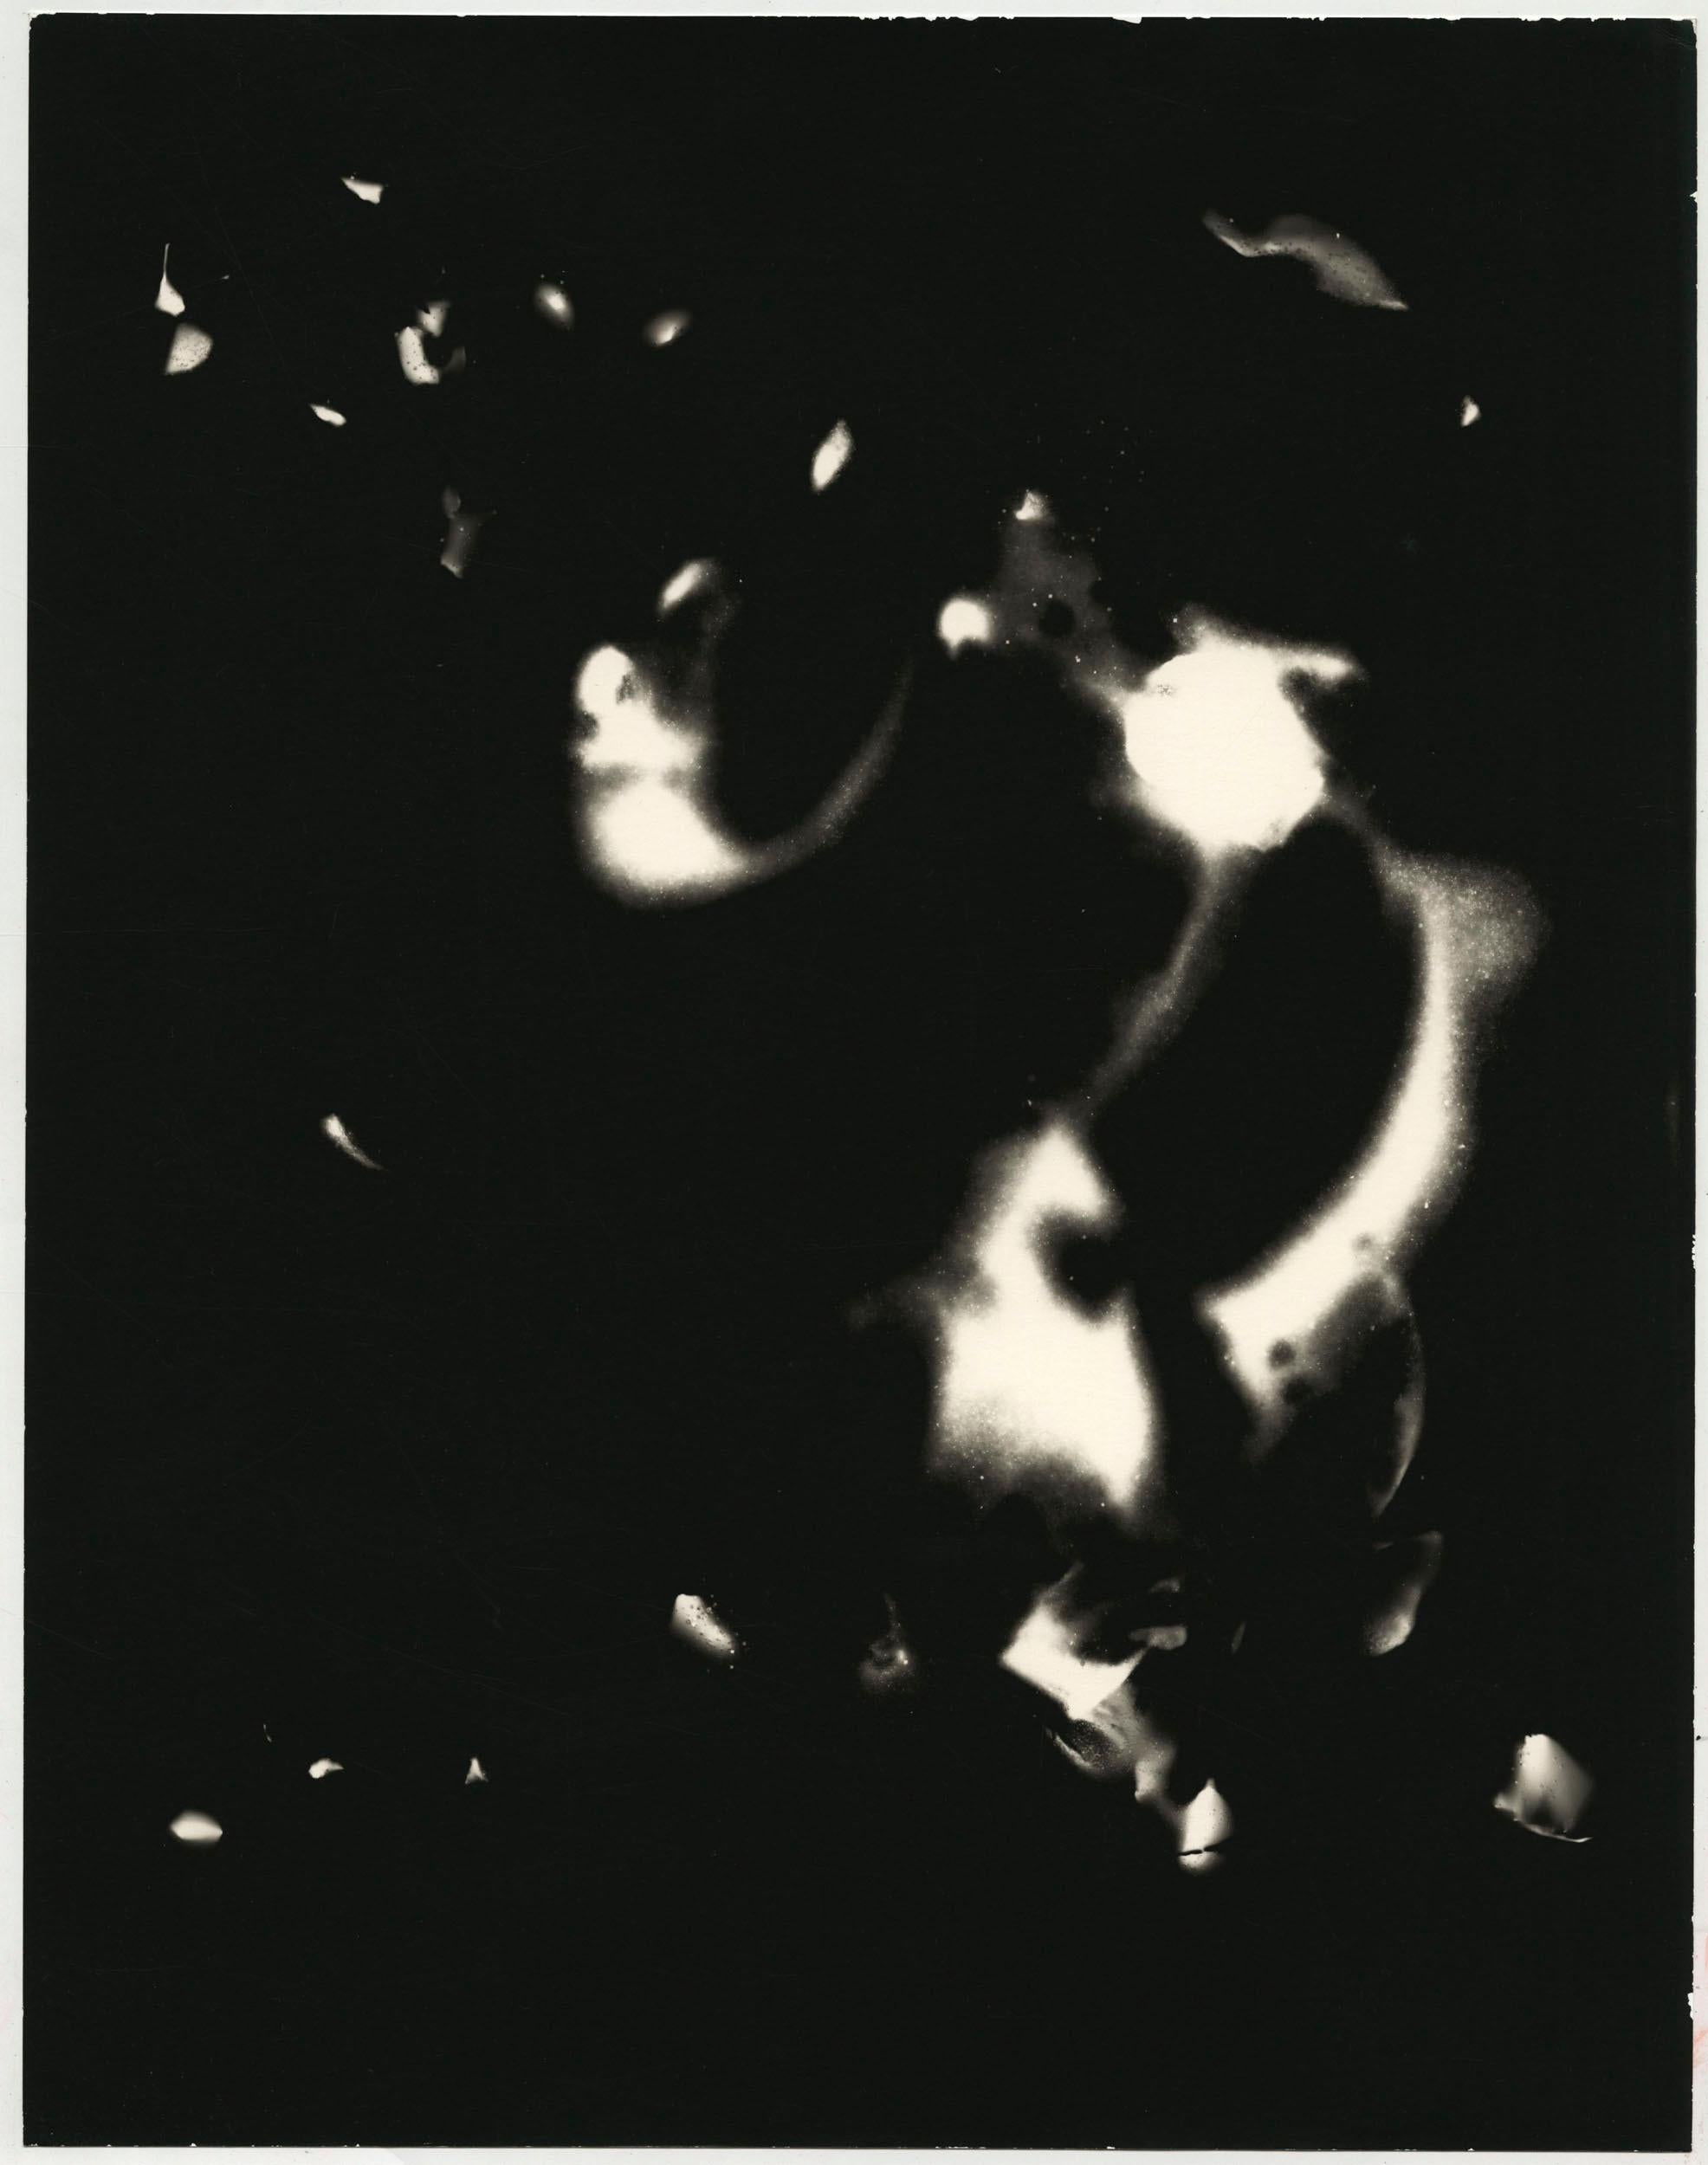 Musik der Nacht – einzigartiges zeitgenössisches Schwarz-Weiß-Silber-Gelatine-Fotogramm